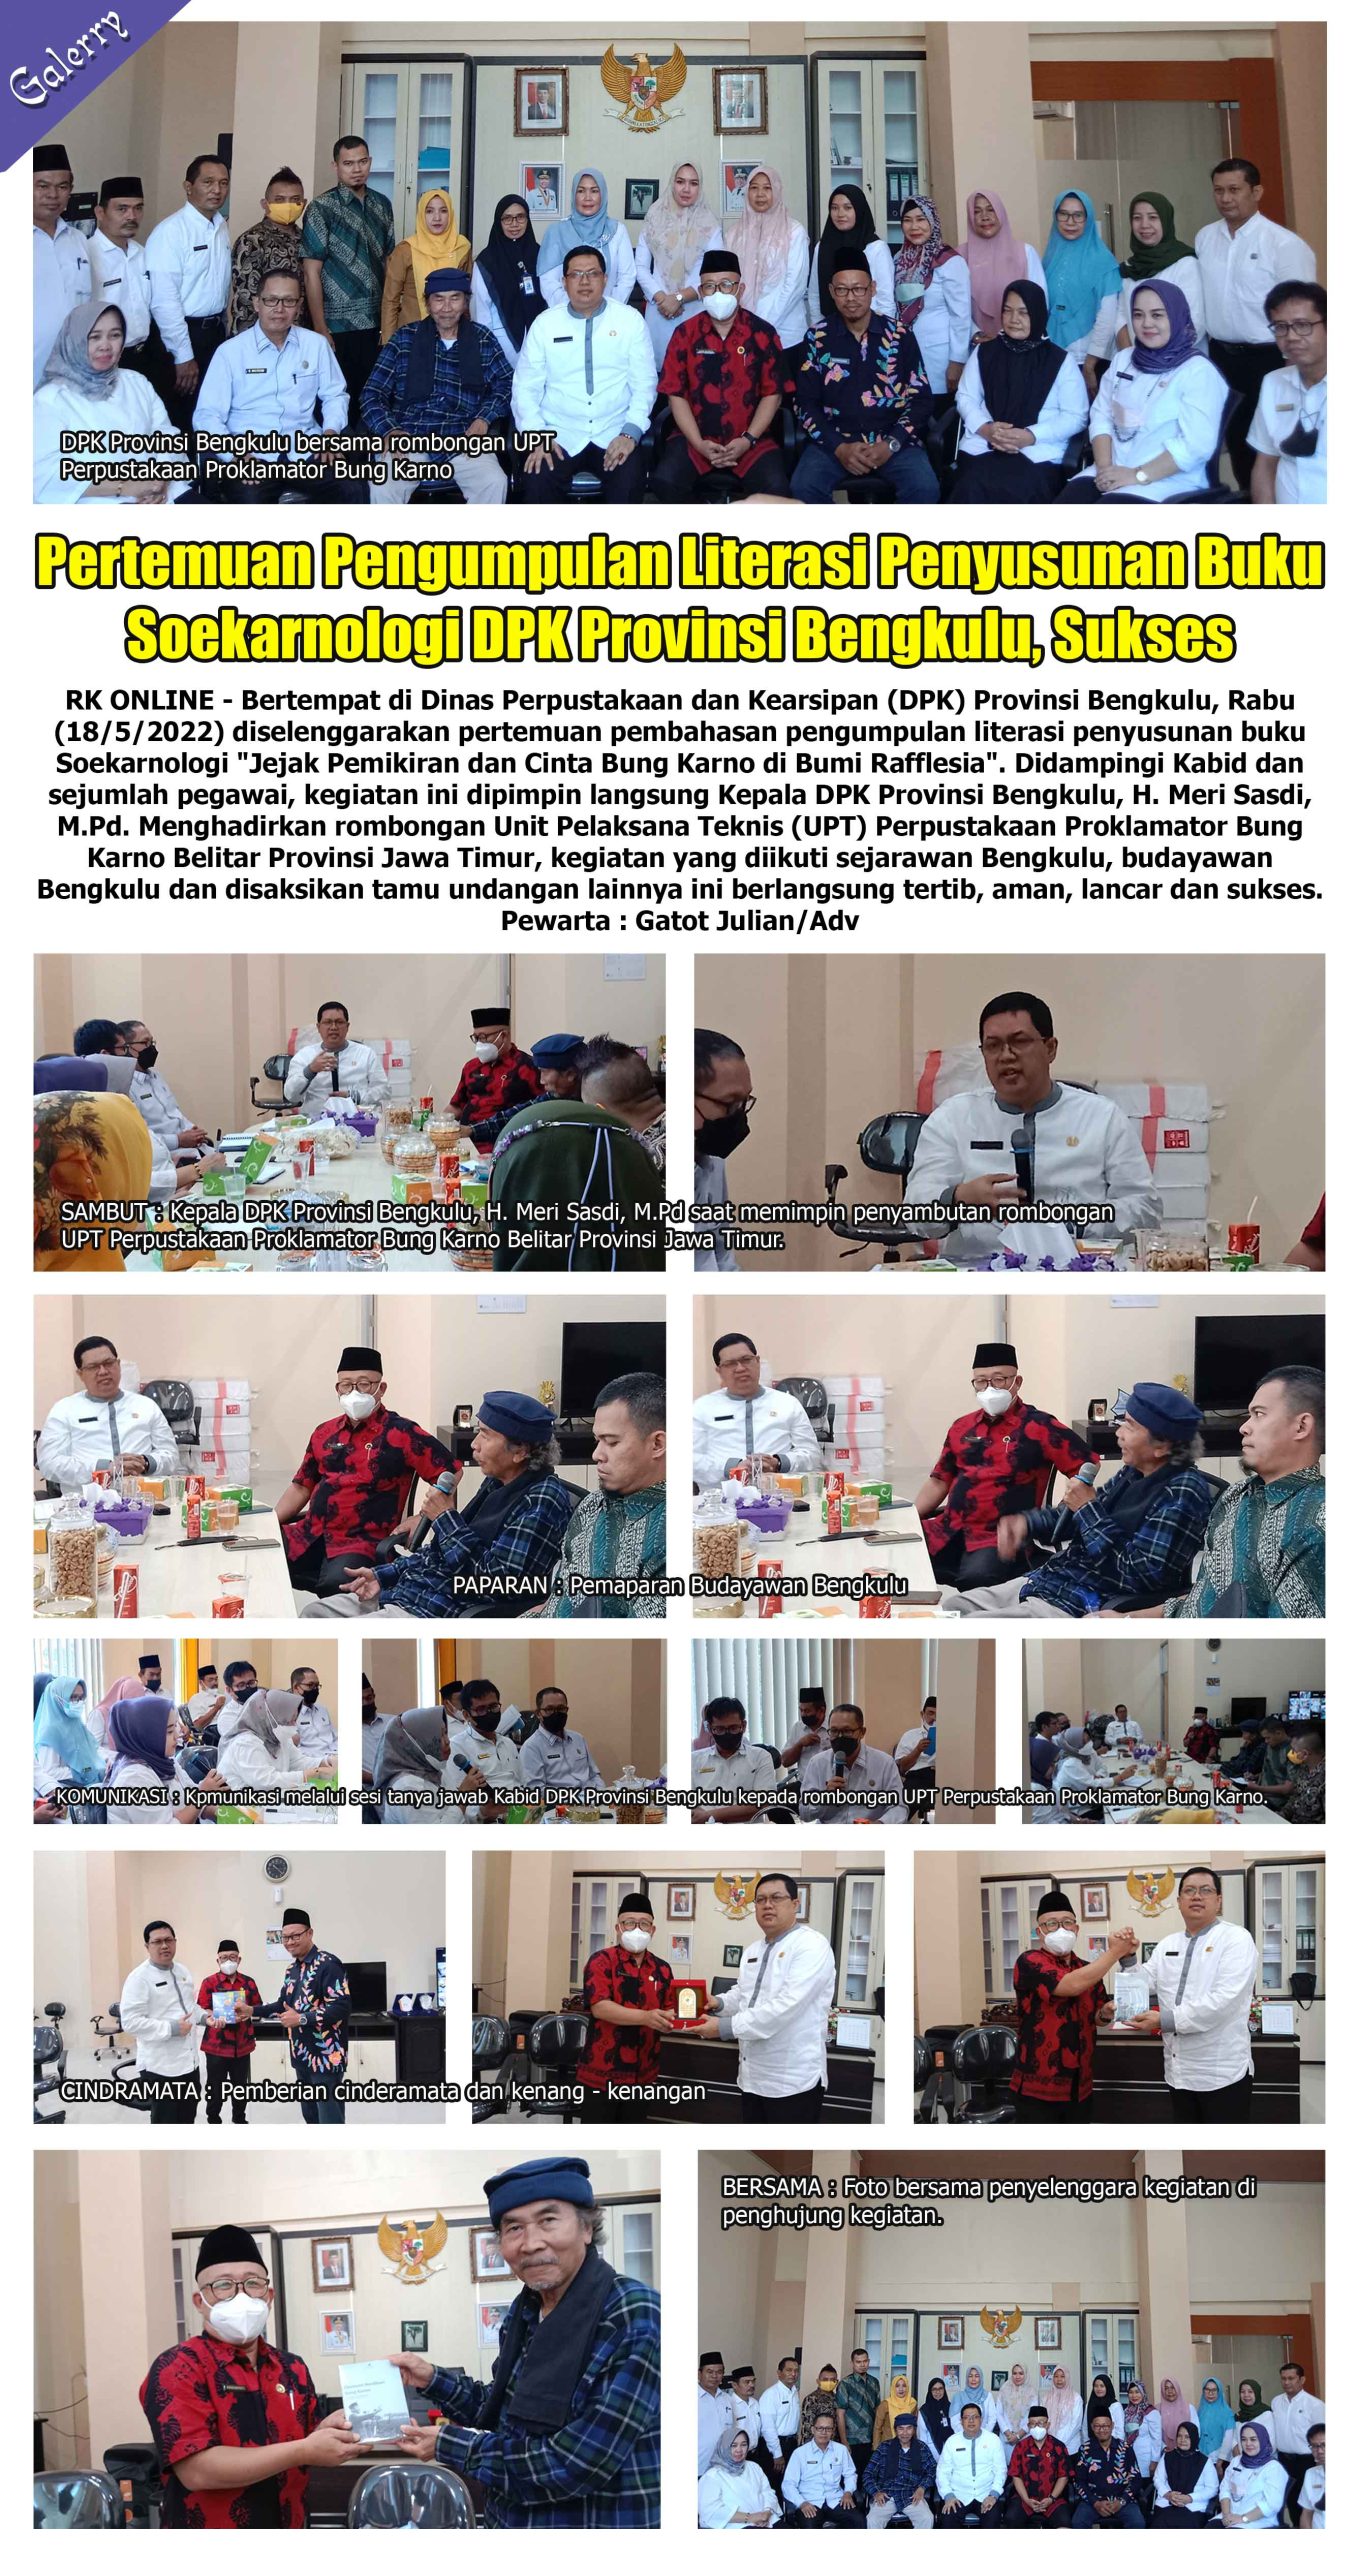 Pertemuan Pengumpulan Literasi Penyusuan Buku Soekarnologi DPK Provinsi Bengkulu, Sukses